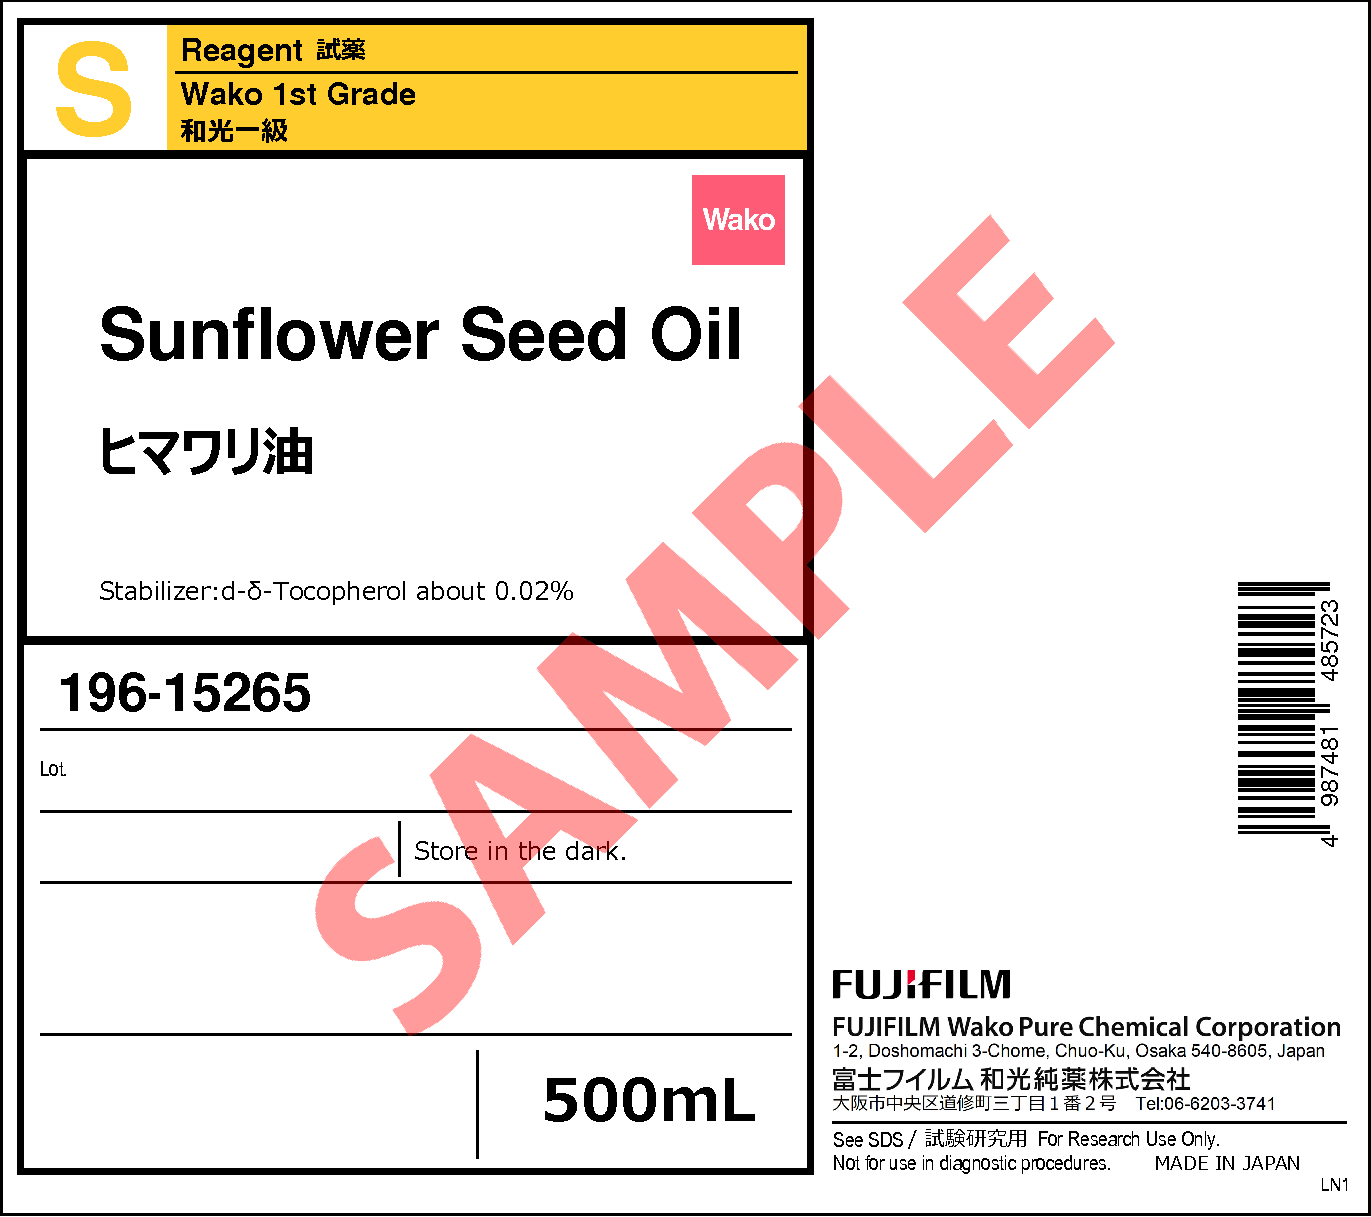 8001-21-6・ヒマワリ油・Sunflower Seed Oil・192-15262・196-15265 